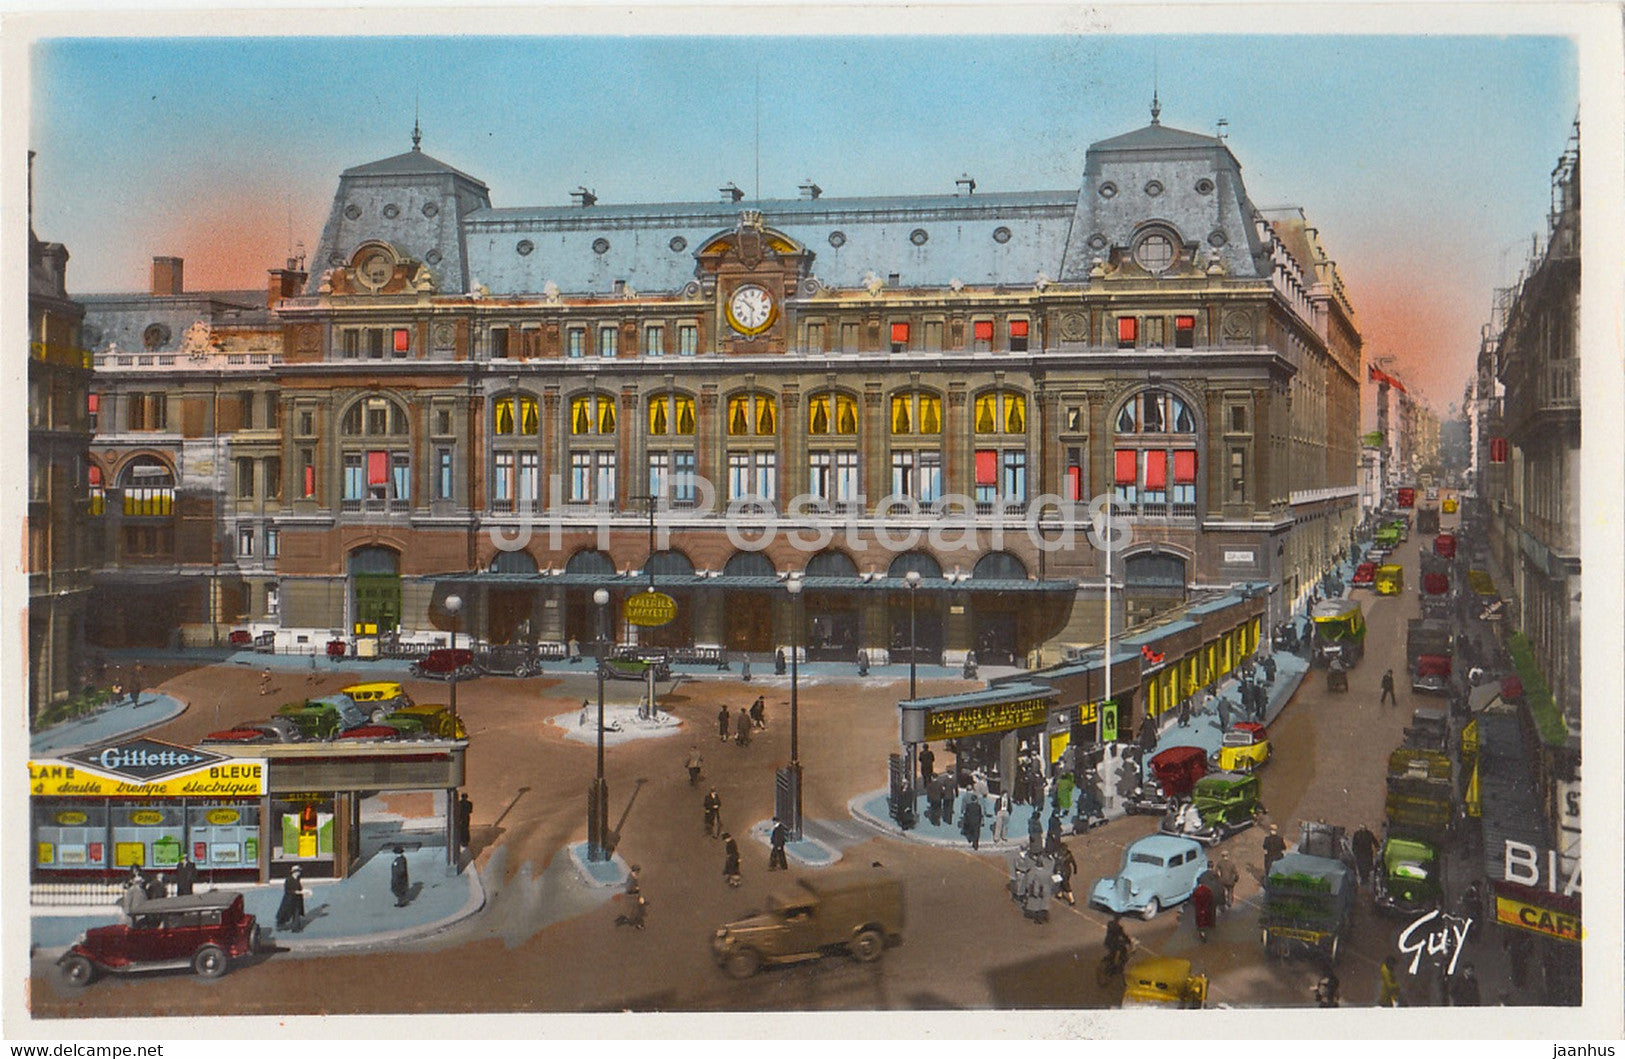 Paris Et Ses Merveilles - La Gare St Lazare - La Cour du Havre - old car - 61 - old postcard - France - unused - JH Postcards